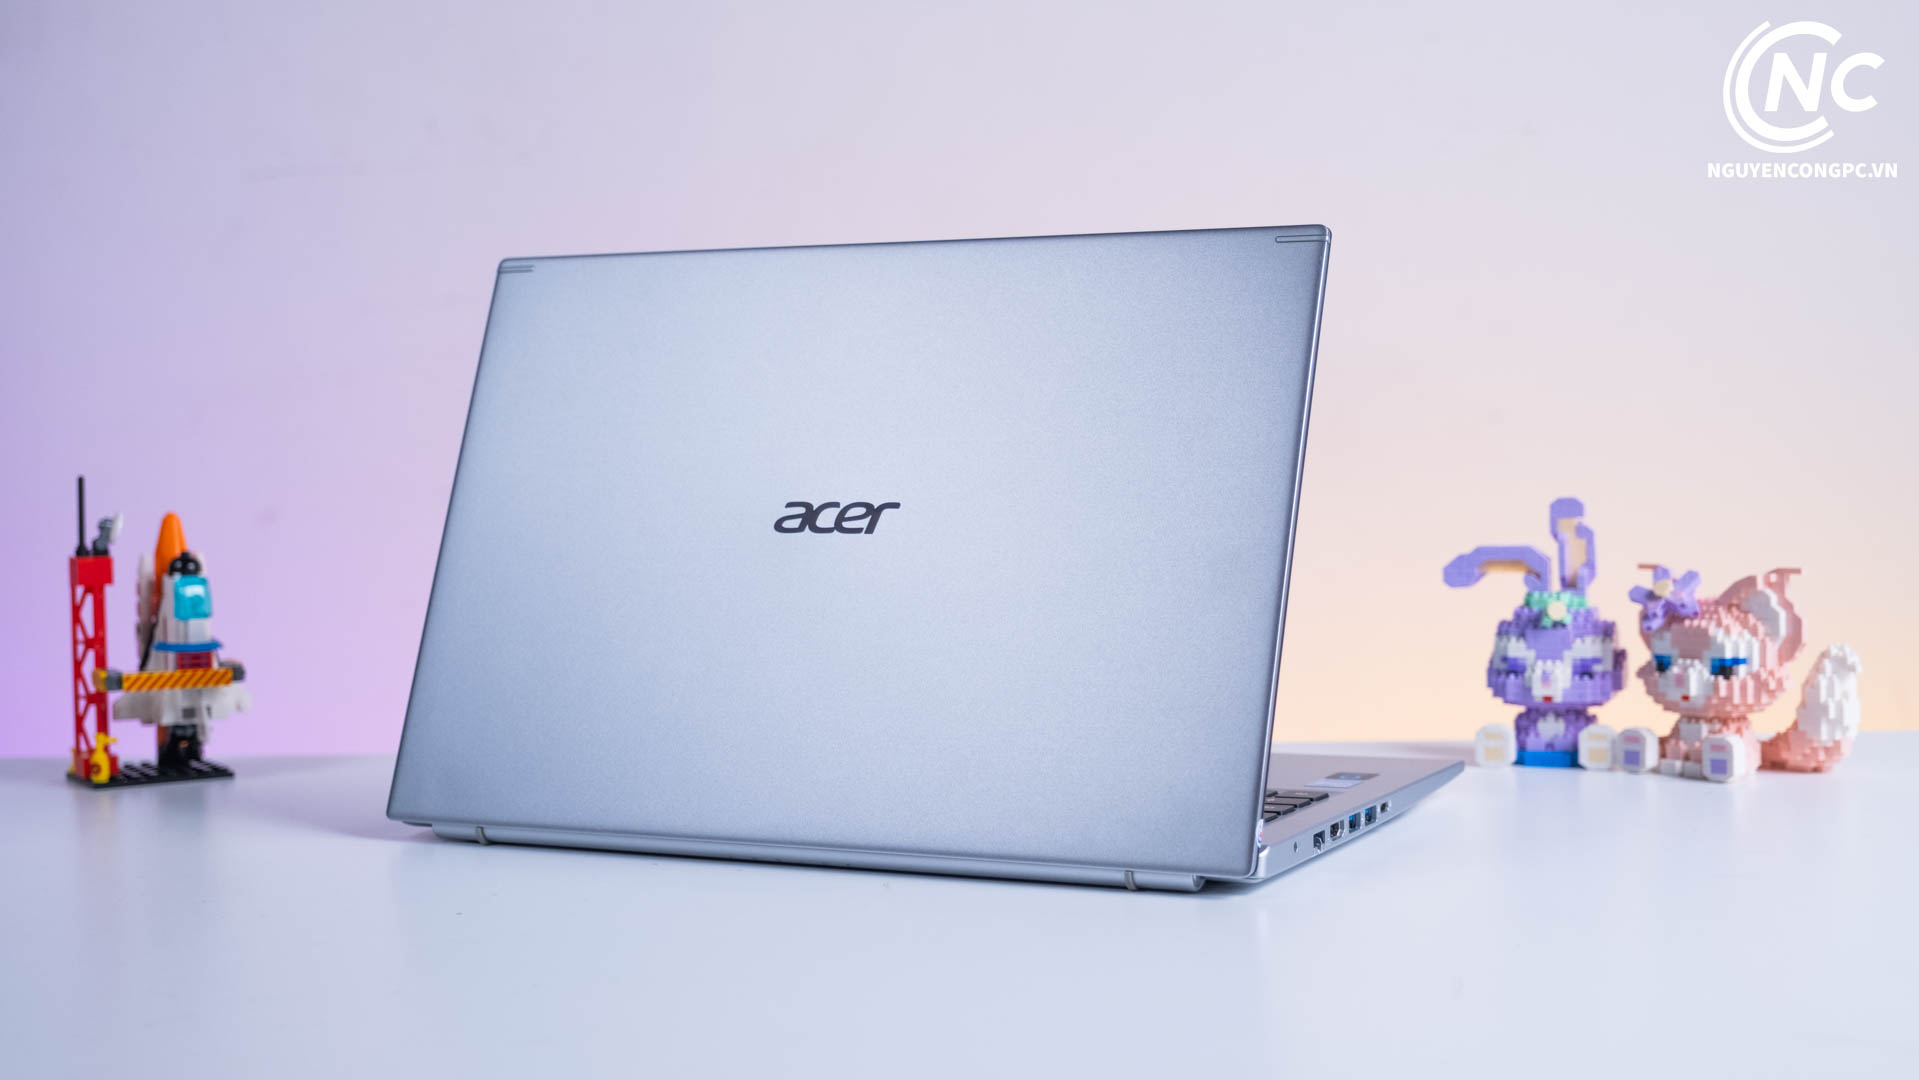 Hướng dẫn cách check bảo hành laptop Acer chi tiết, nhanh chóng